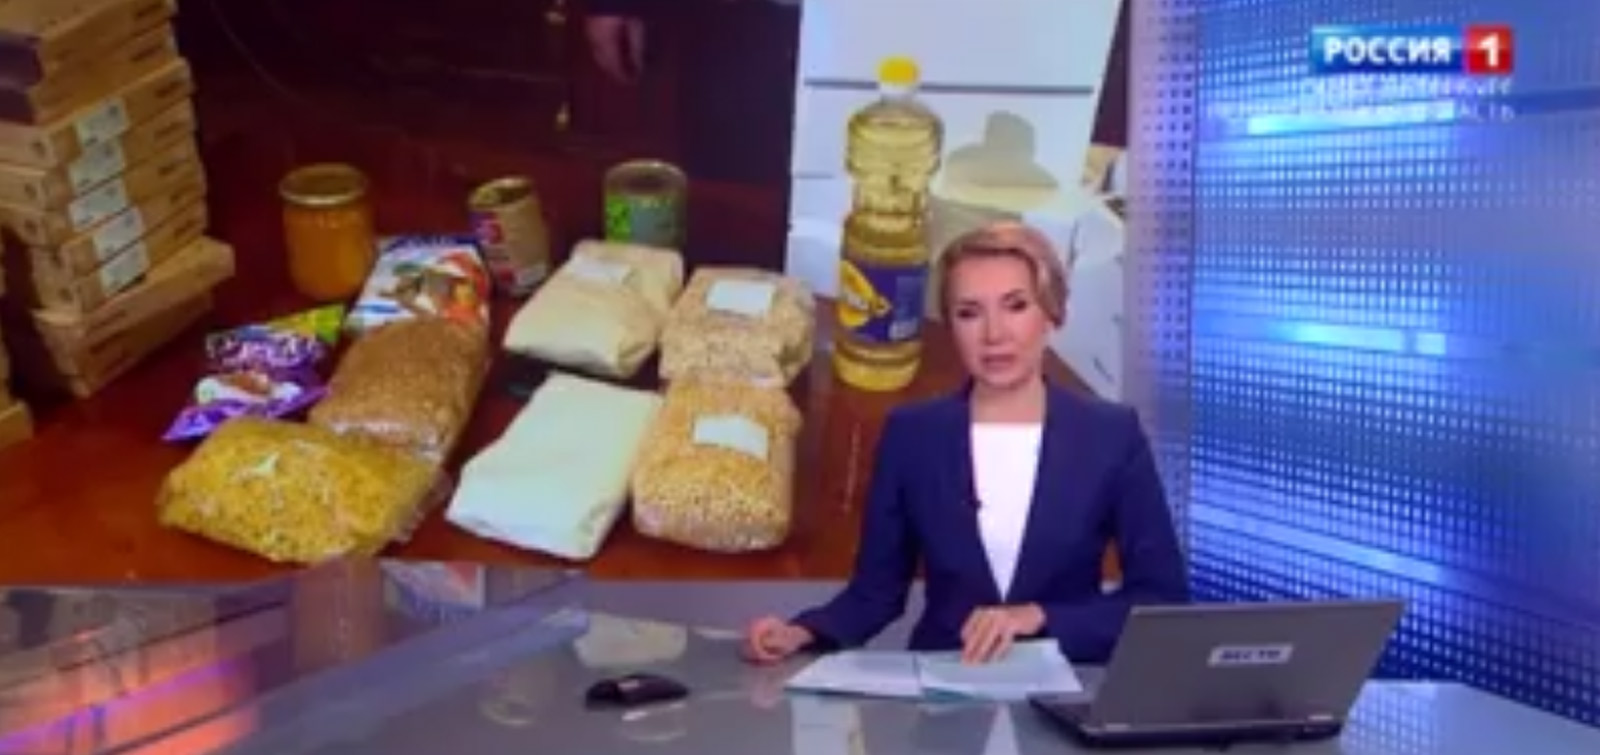 “Rossiya 1” telekanalı Azərbaycan diasporunun xeyriyyə aksiyasından bəhs edib